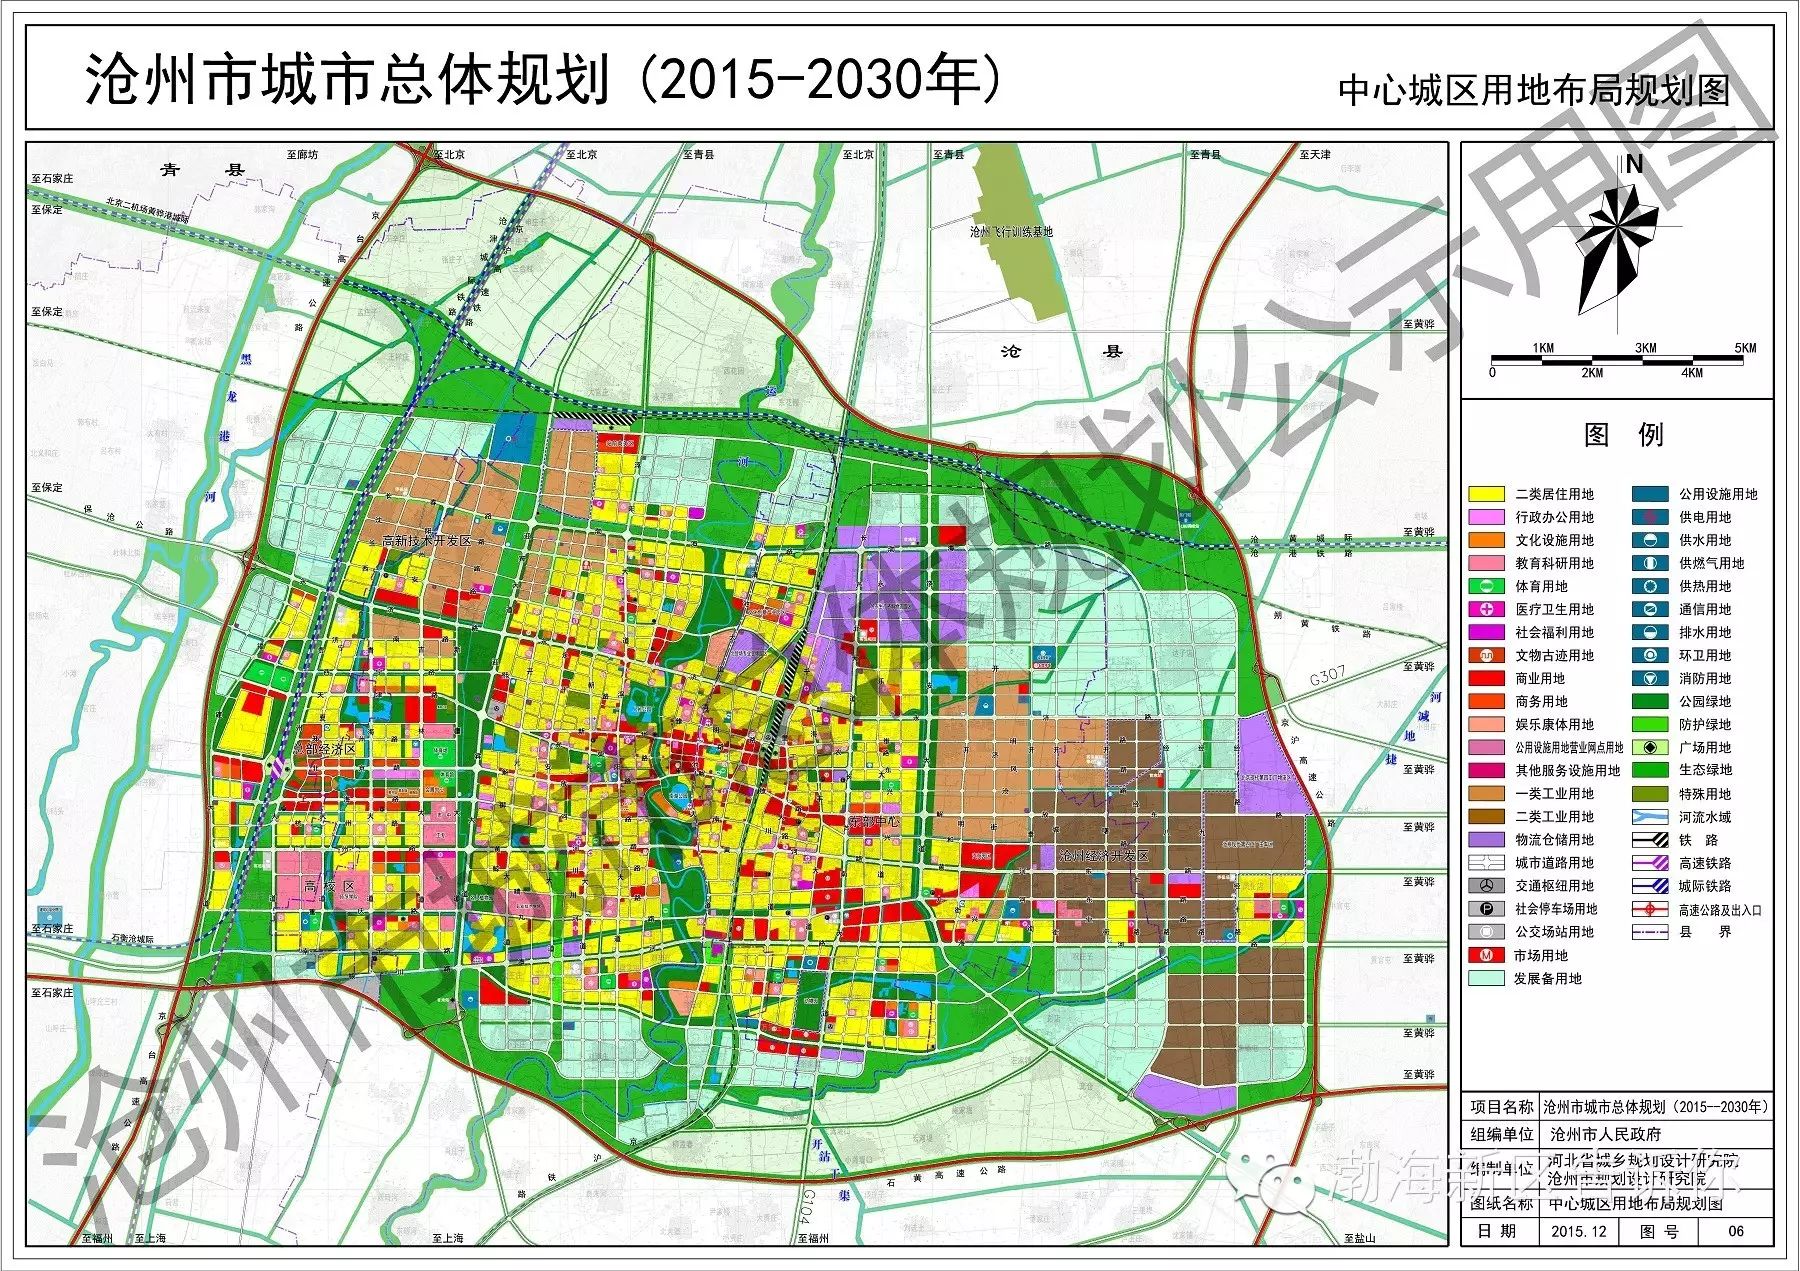 [新闻]沧州市城市总体规划(2015-2030年)(草案)公布